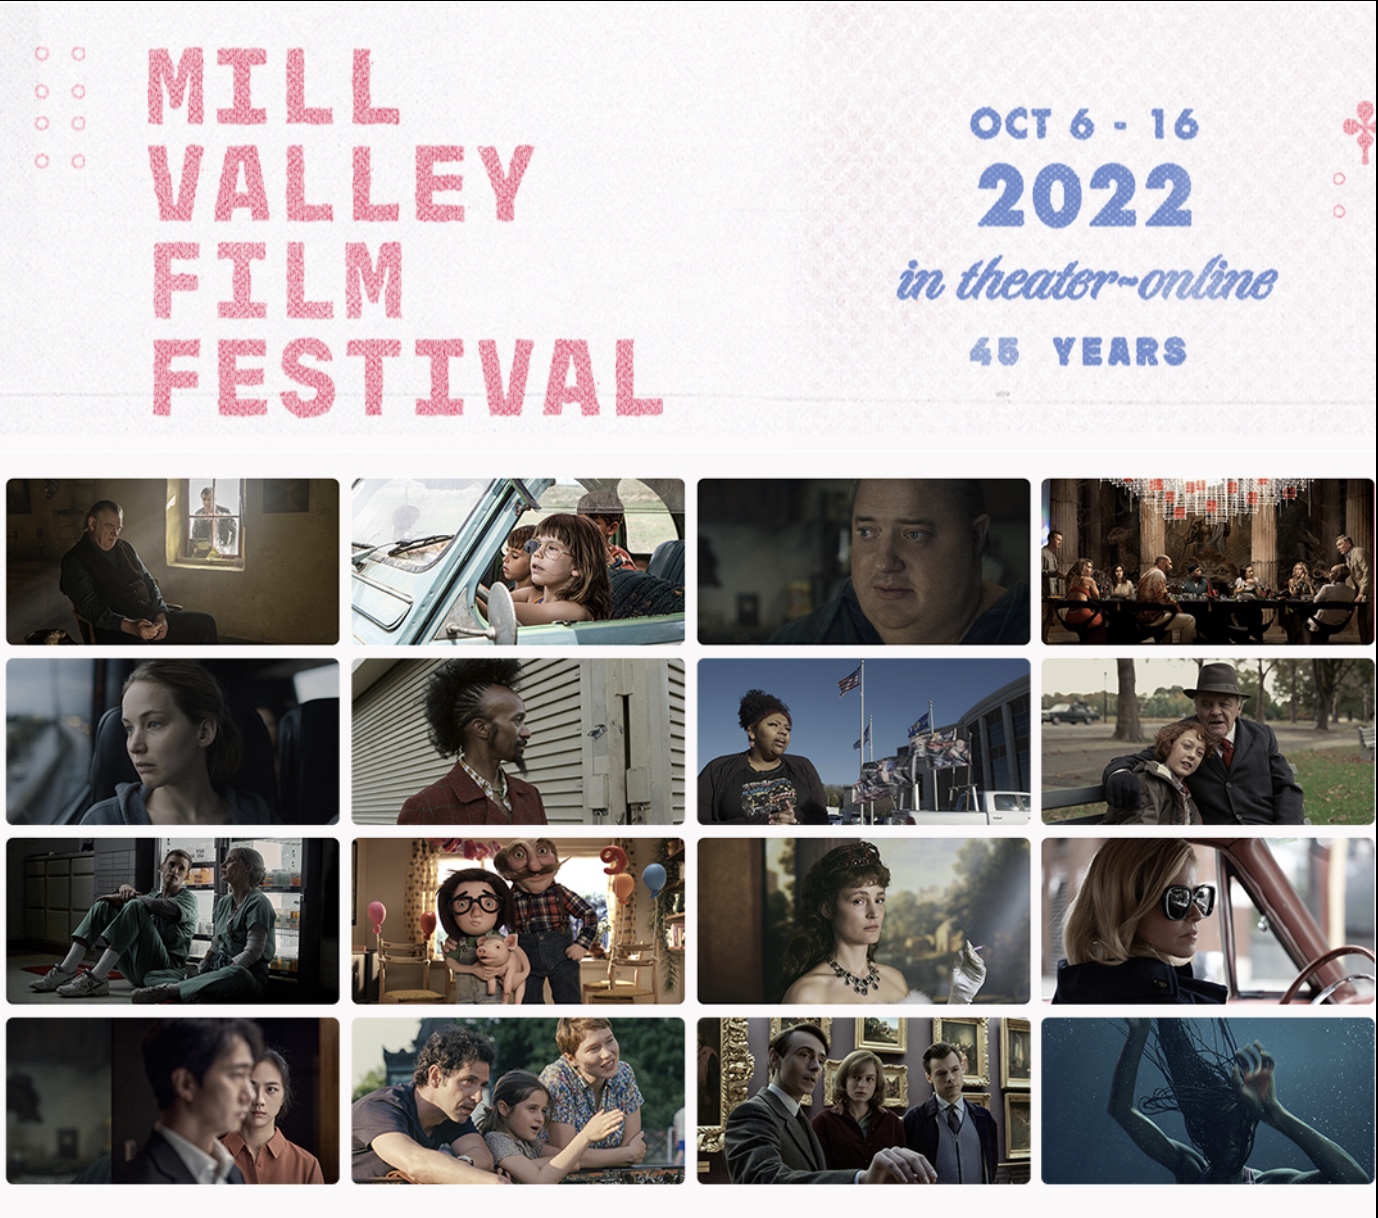 Mill Valley Film Festival At Mill Valley Plaza Depot Plaza In Mill Valley October 16 2022